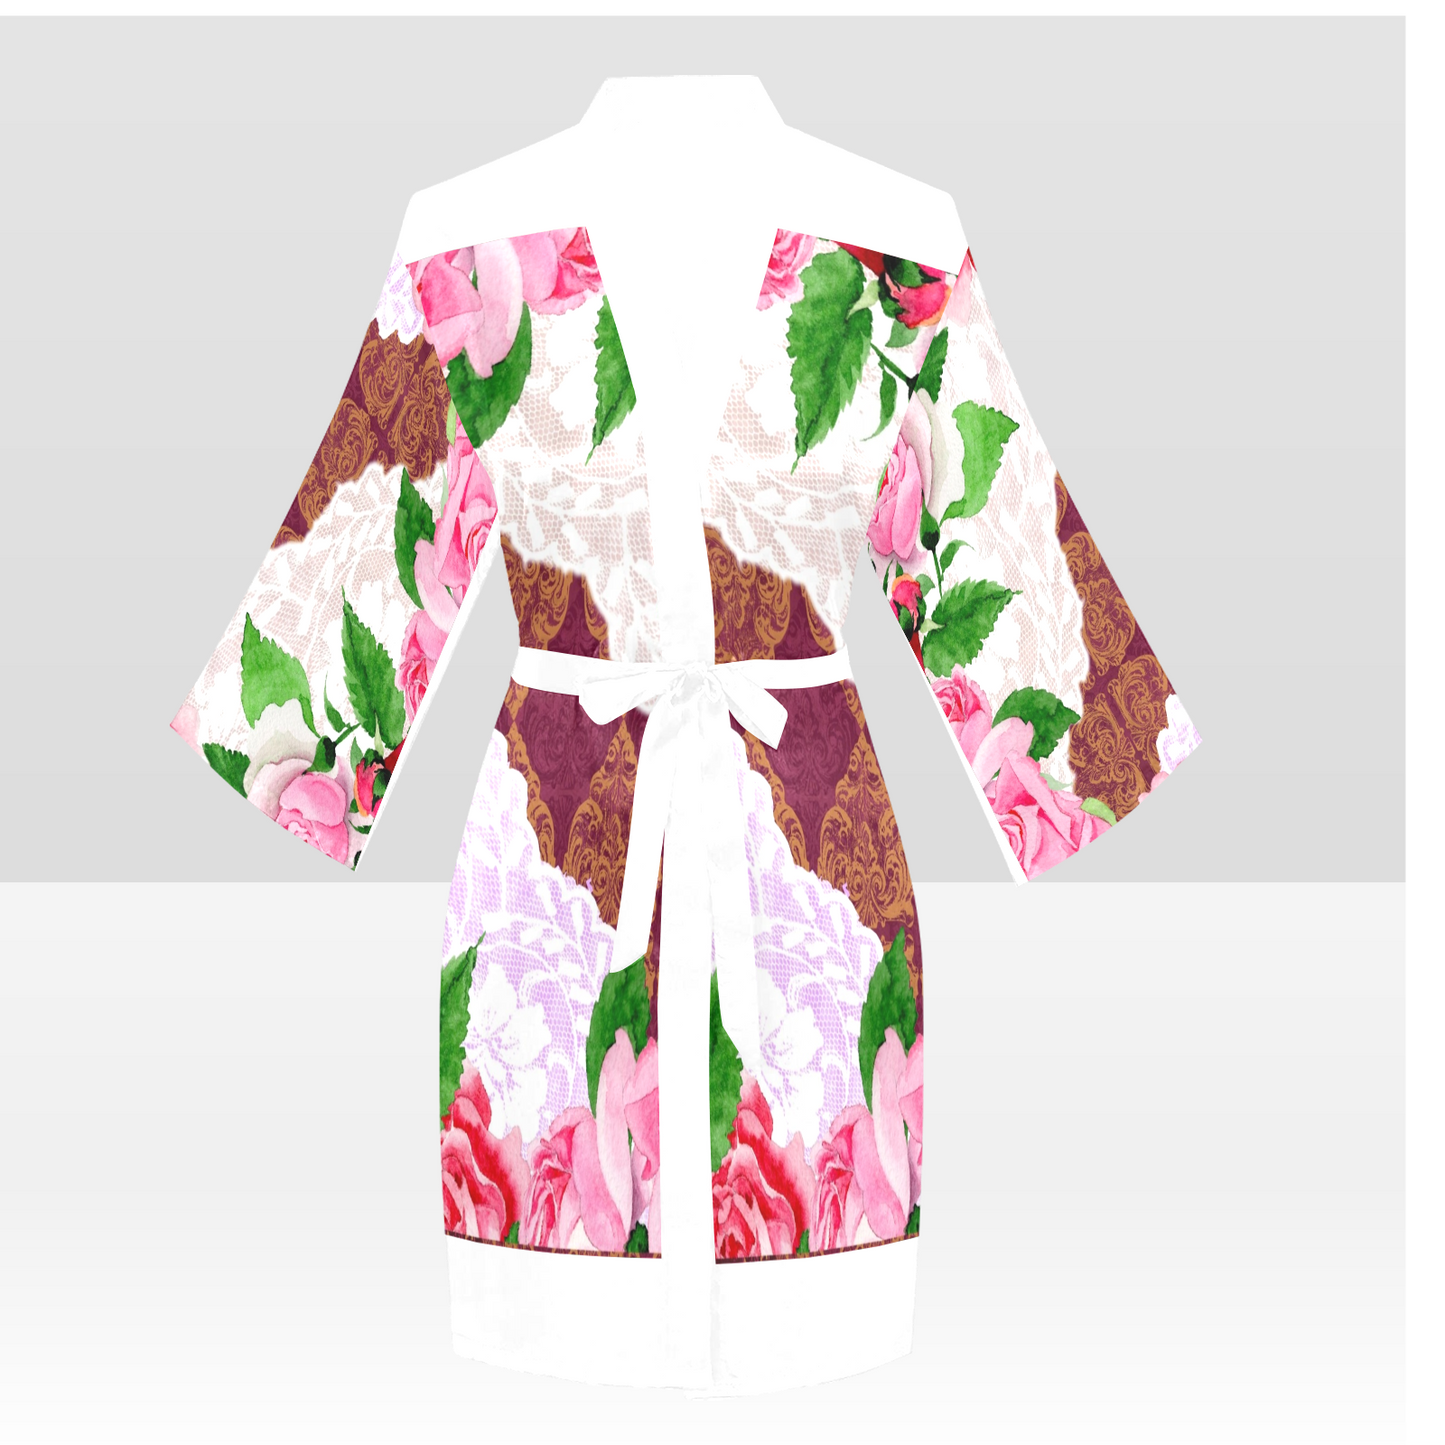 Victorian Lace Kimono Robe, Black or White Trim, Sizes XS to 2XL, Design 19